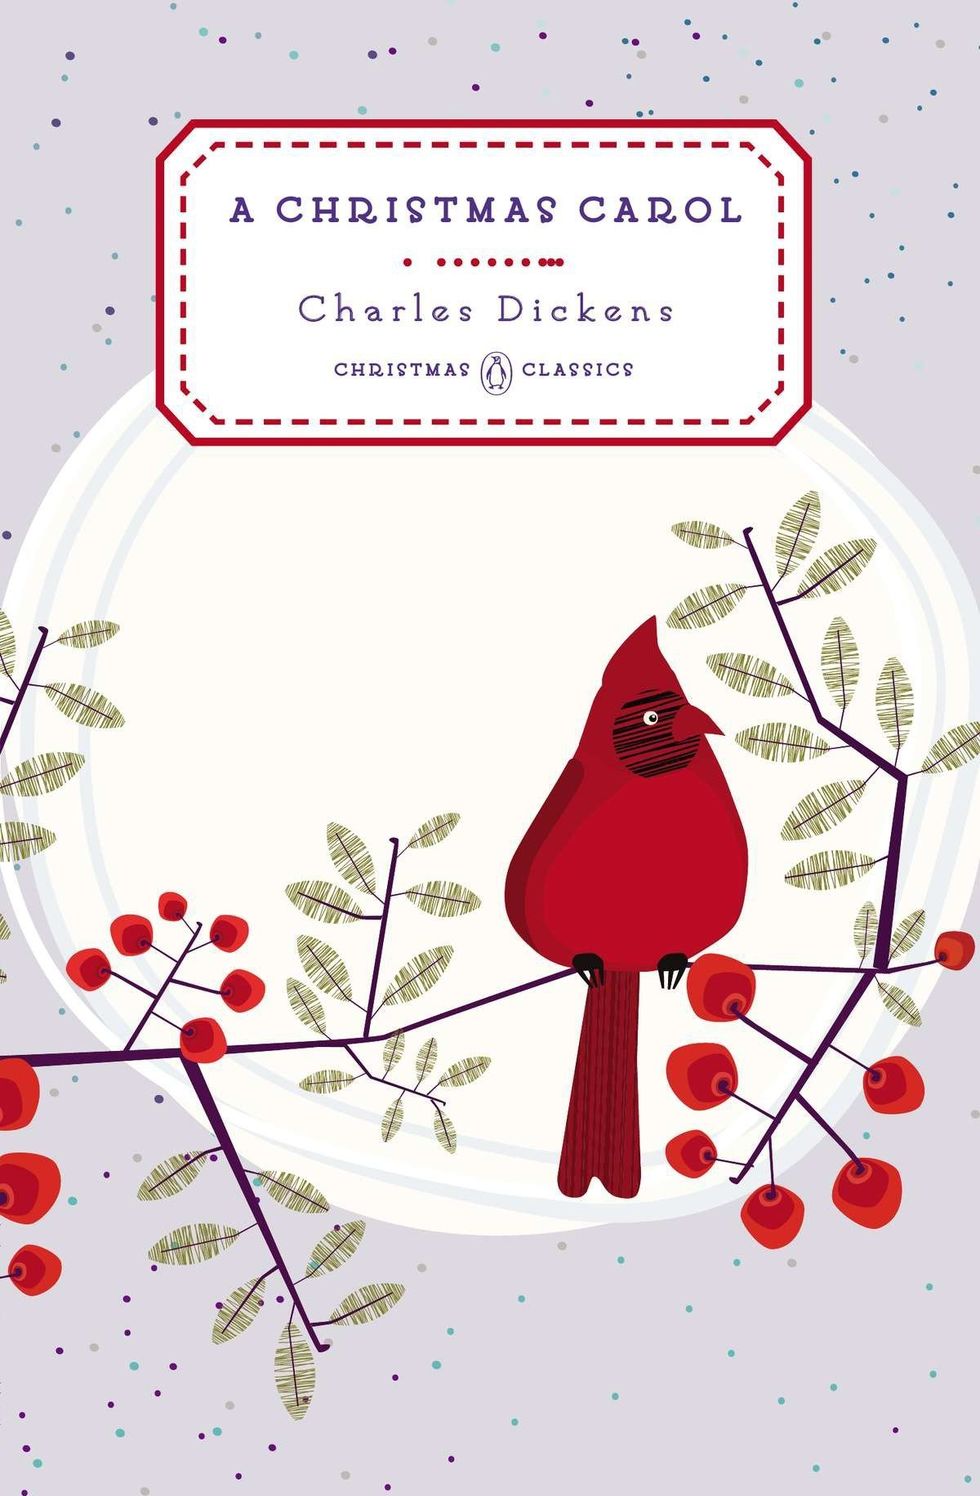 A Christmas Carol (Penguin Christmas Classics)